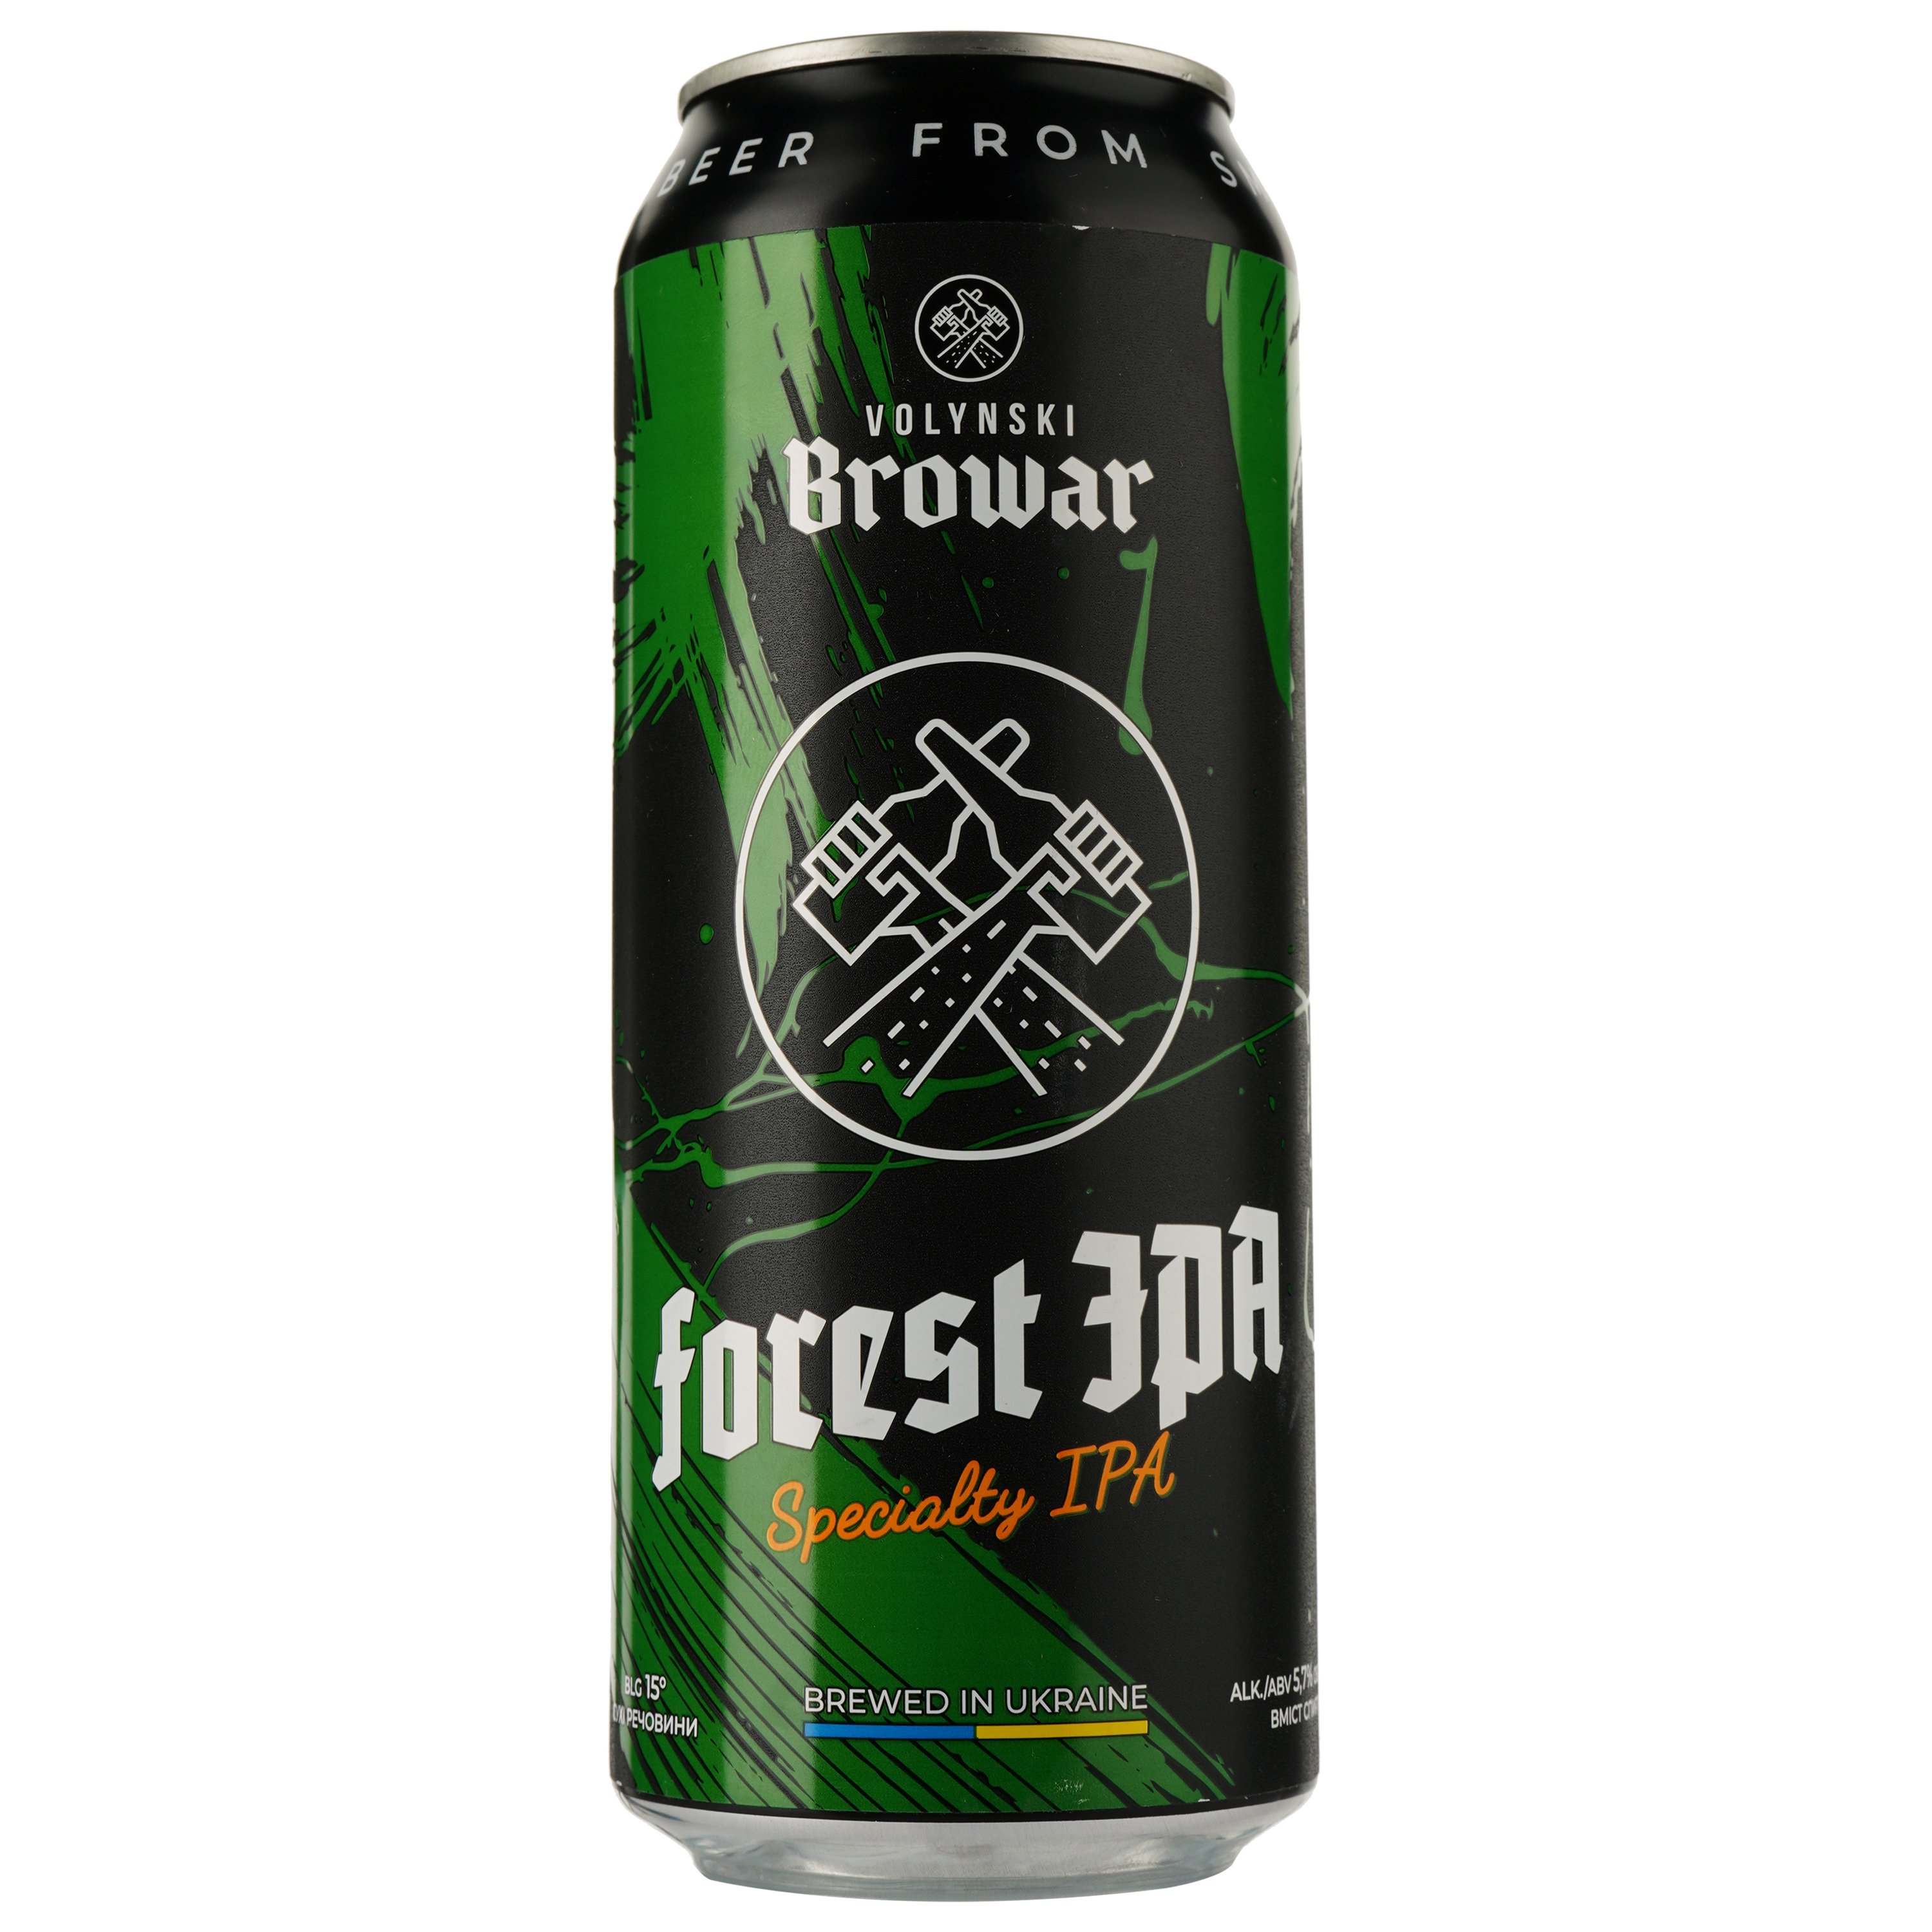 Пиво Volynski Browar Forest Ipa, светлое, нефильтрованное, 5,7%, ж/б, 0,5 л - фото 1